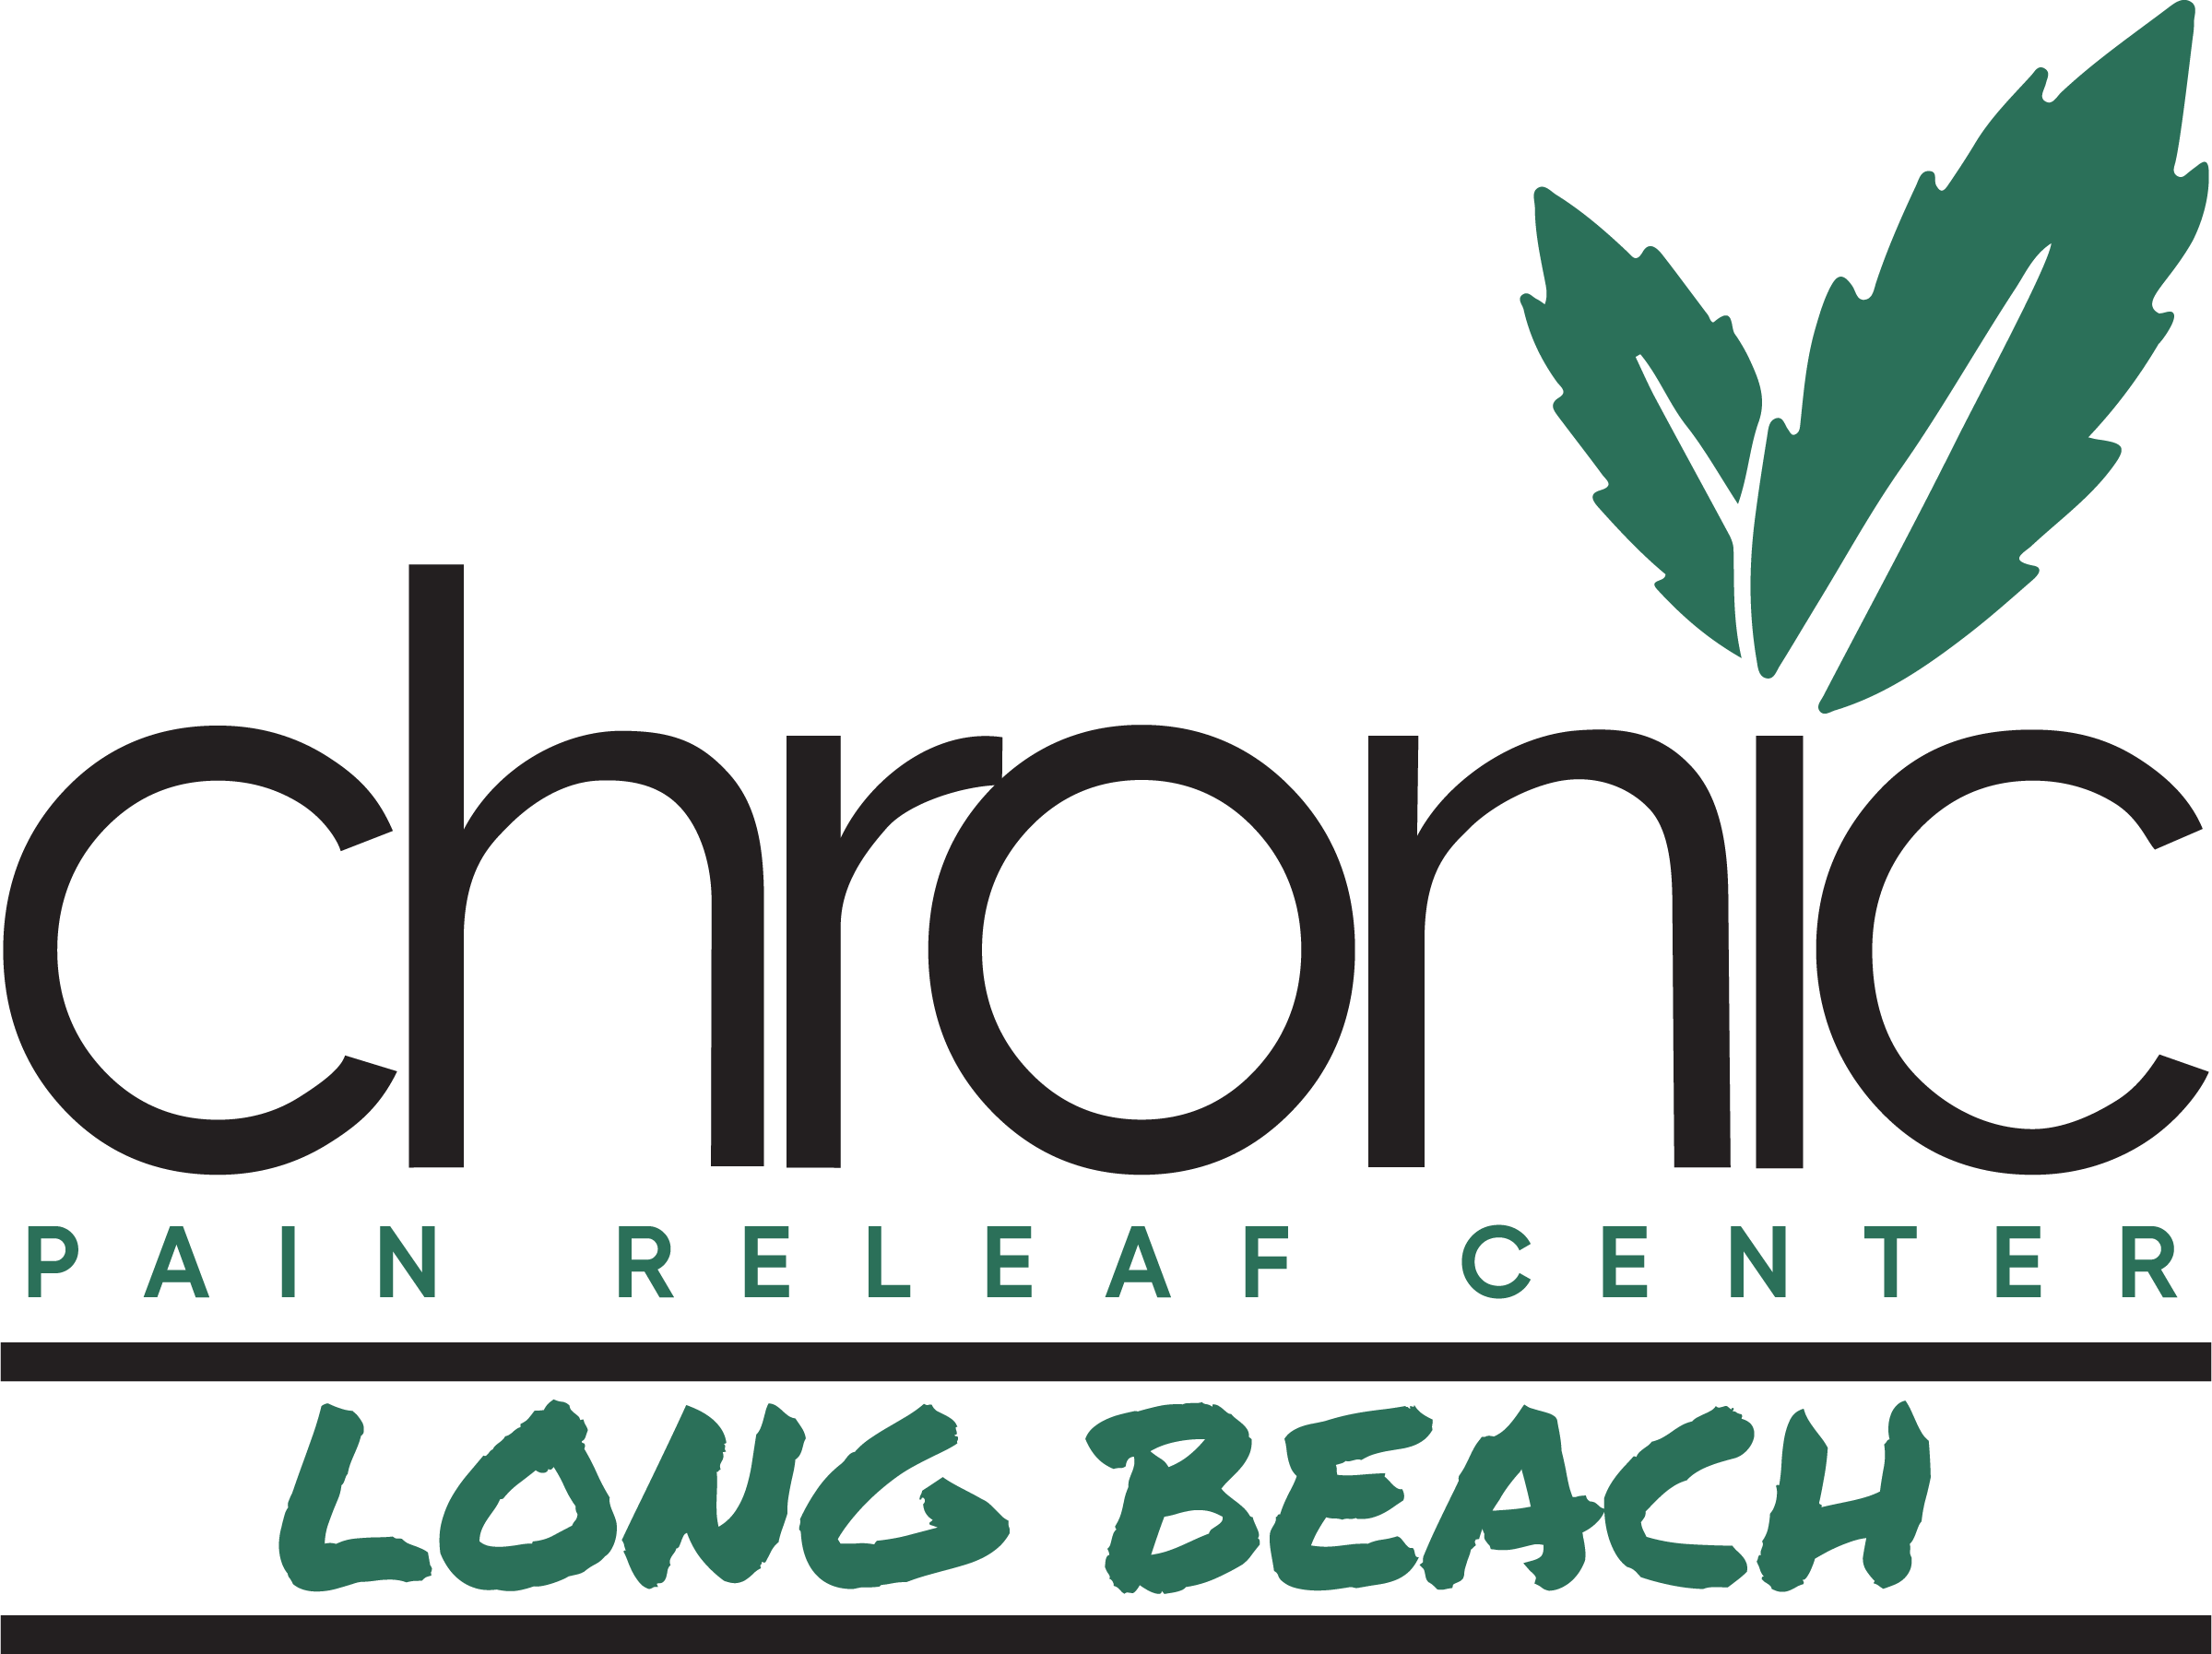 Chronic Pain Releaf Center - Chronic Pain Releaf Center Logo (2399x1794)